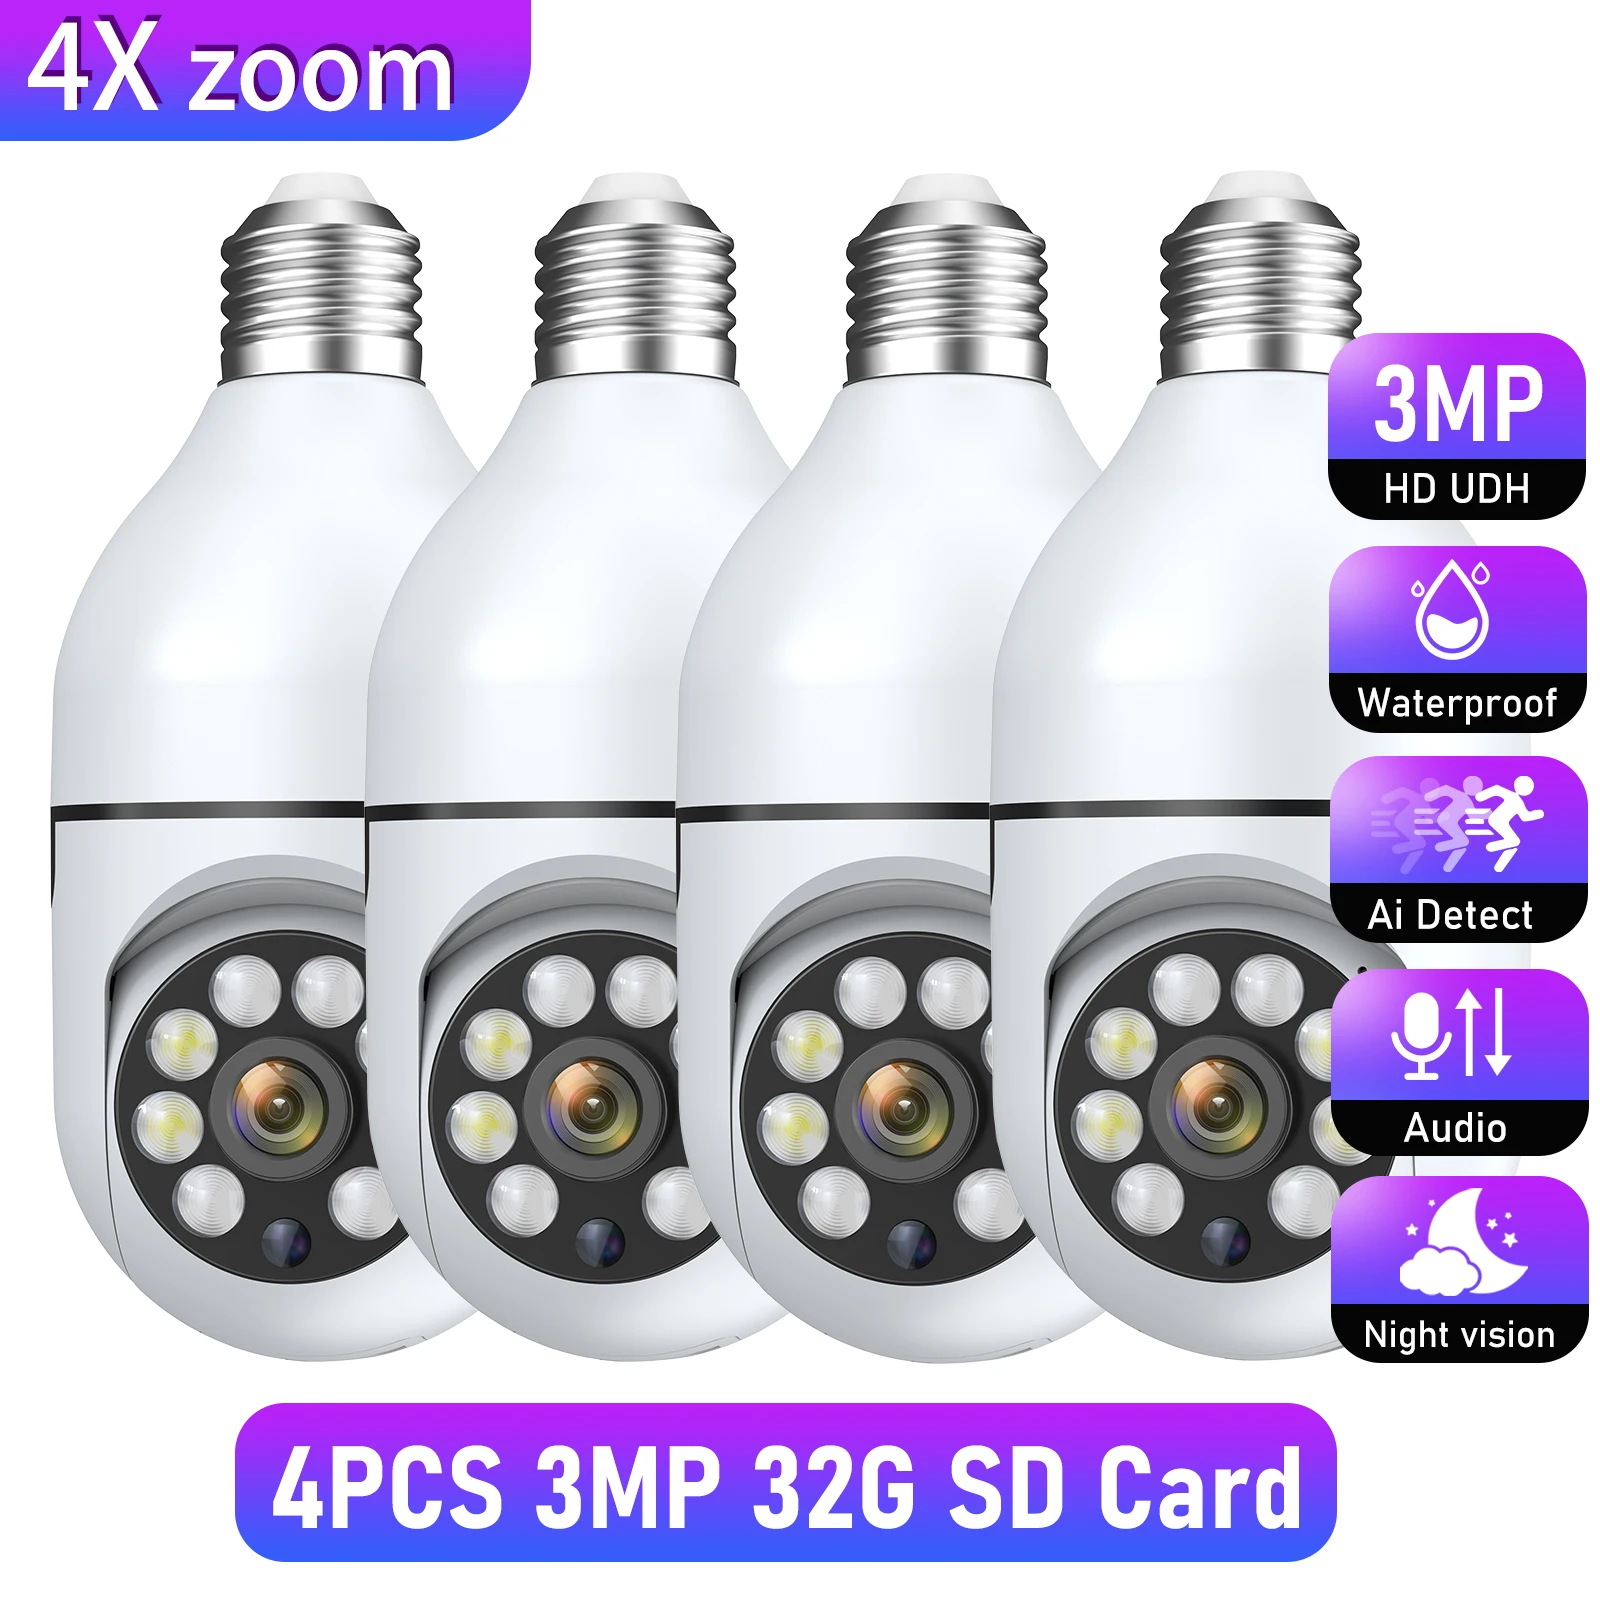 4PCS 3MP 32G SD Card